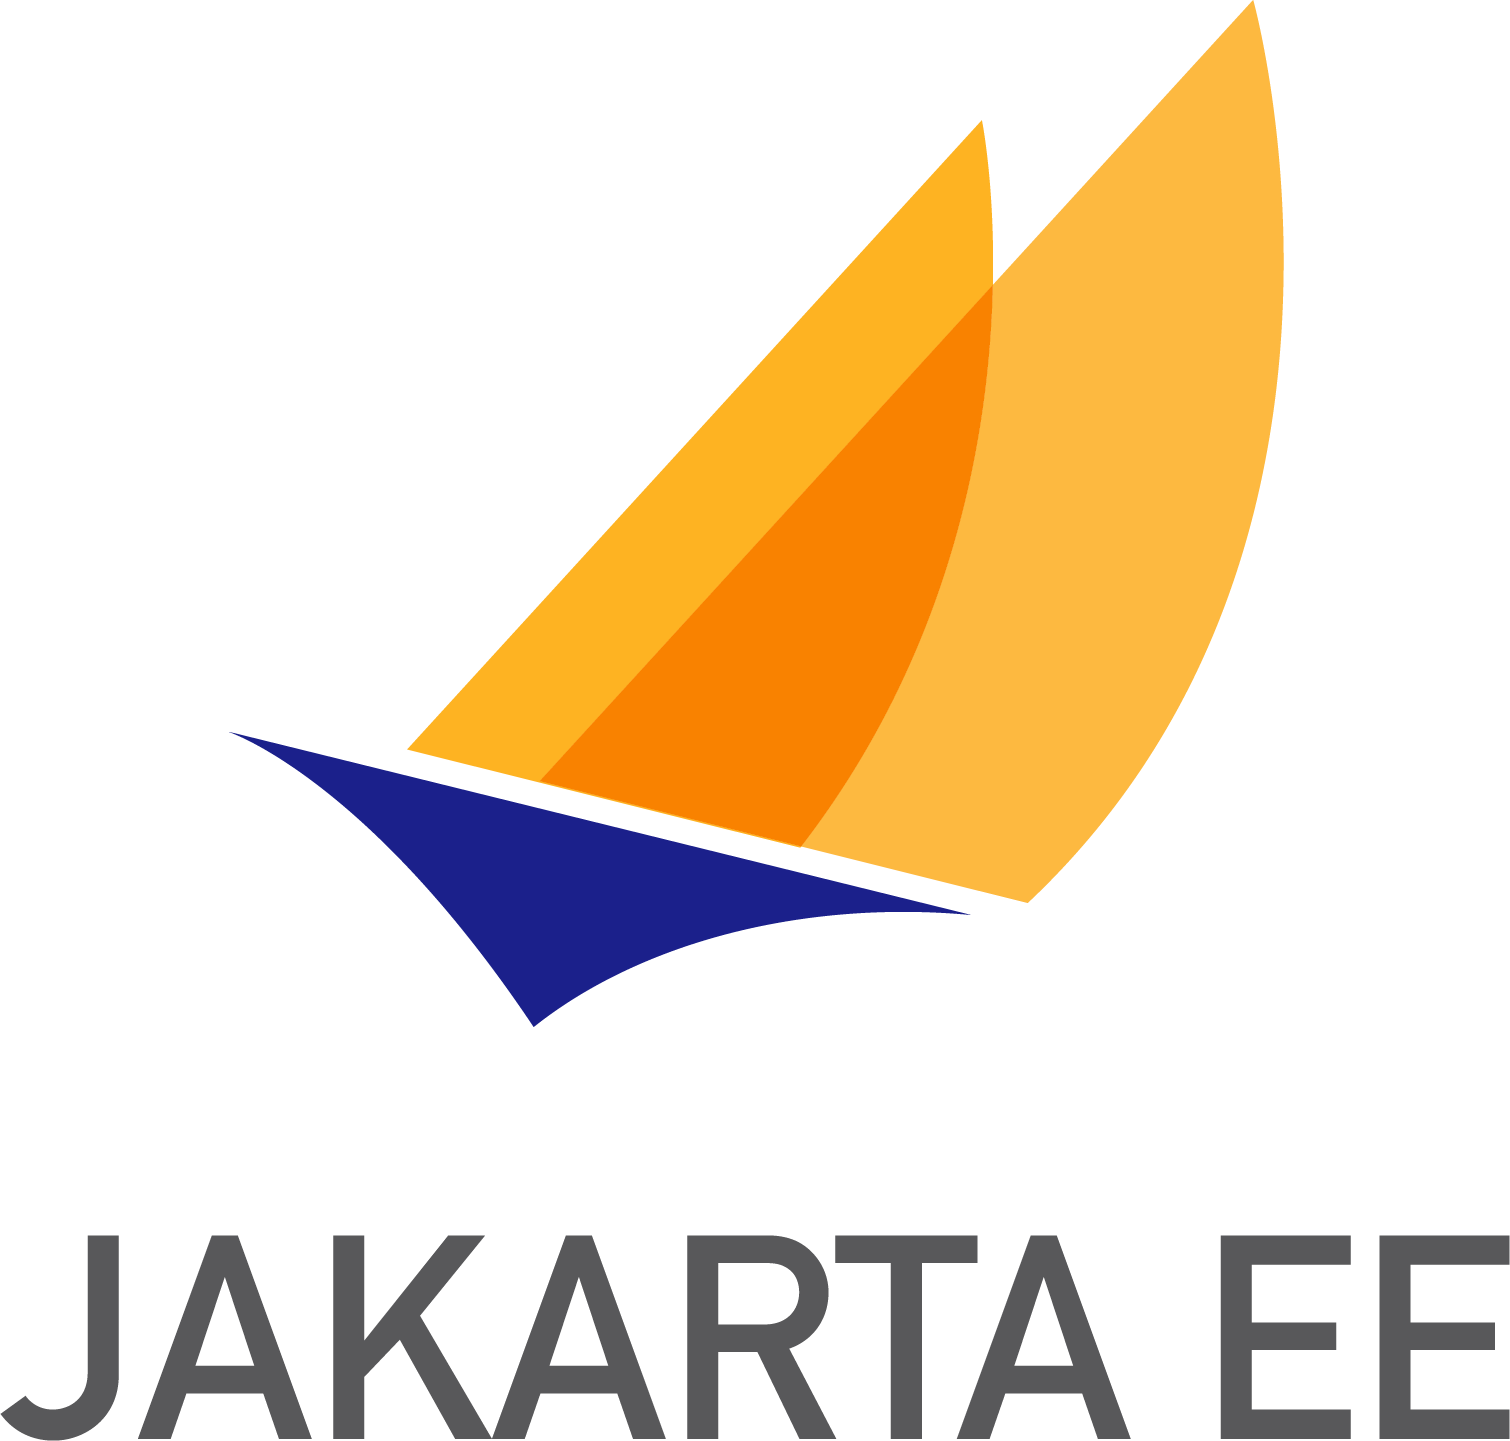 Ee Logo - Jakarta EE is officially out Hat Developer Blog